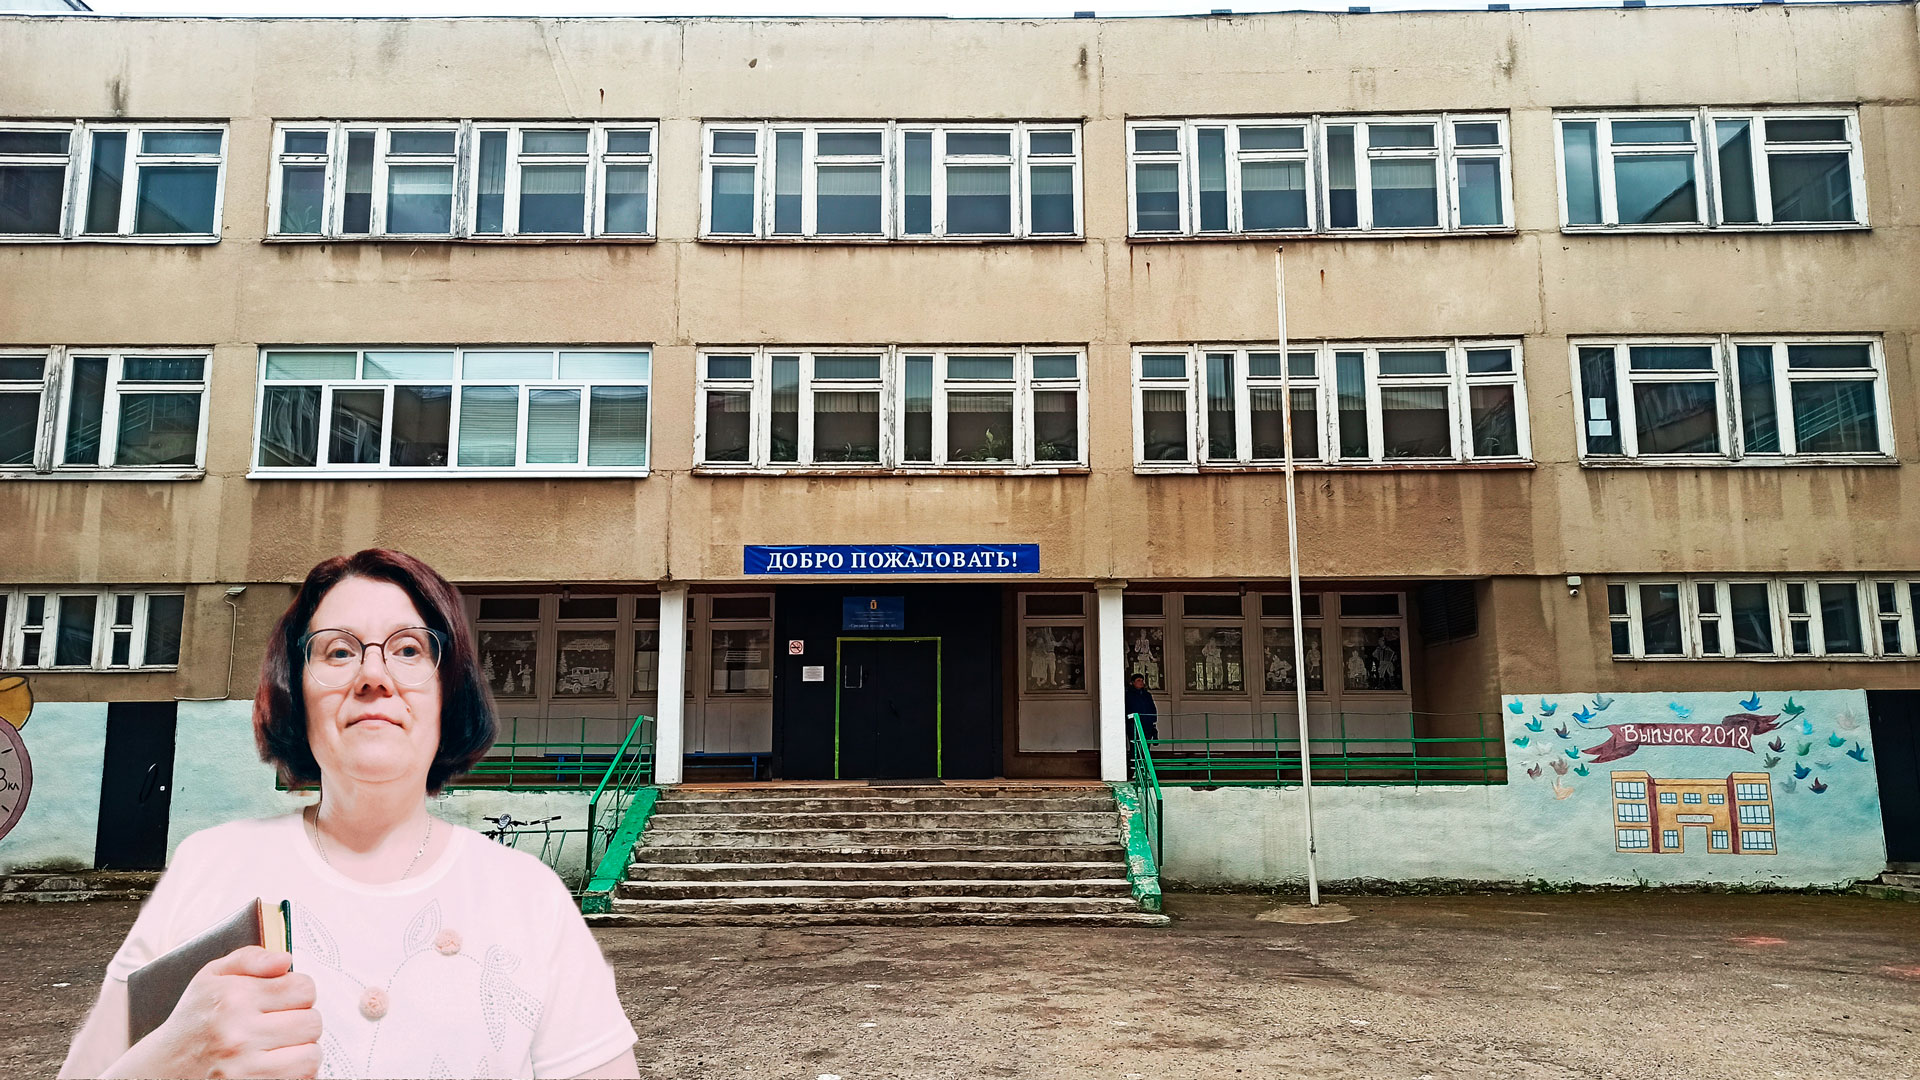 Школа 40 Ярославль: центральный вход в здание школьной организации.